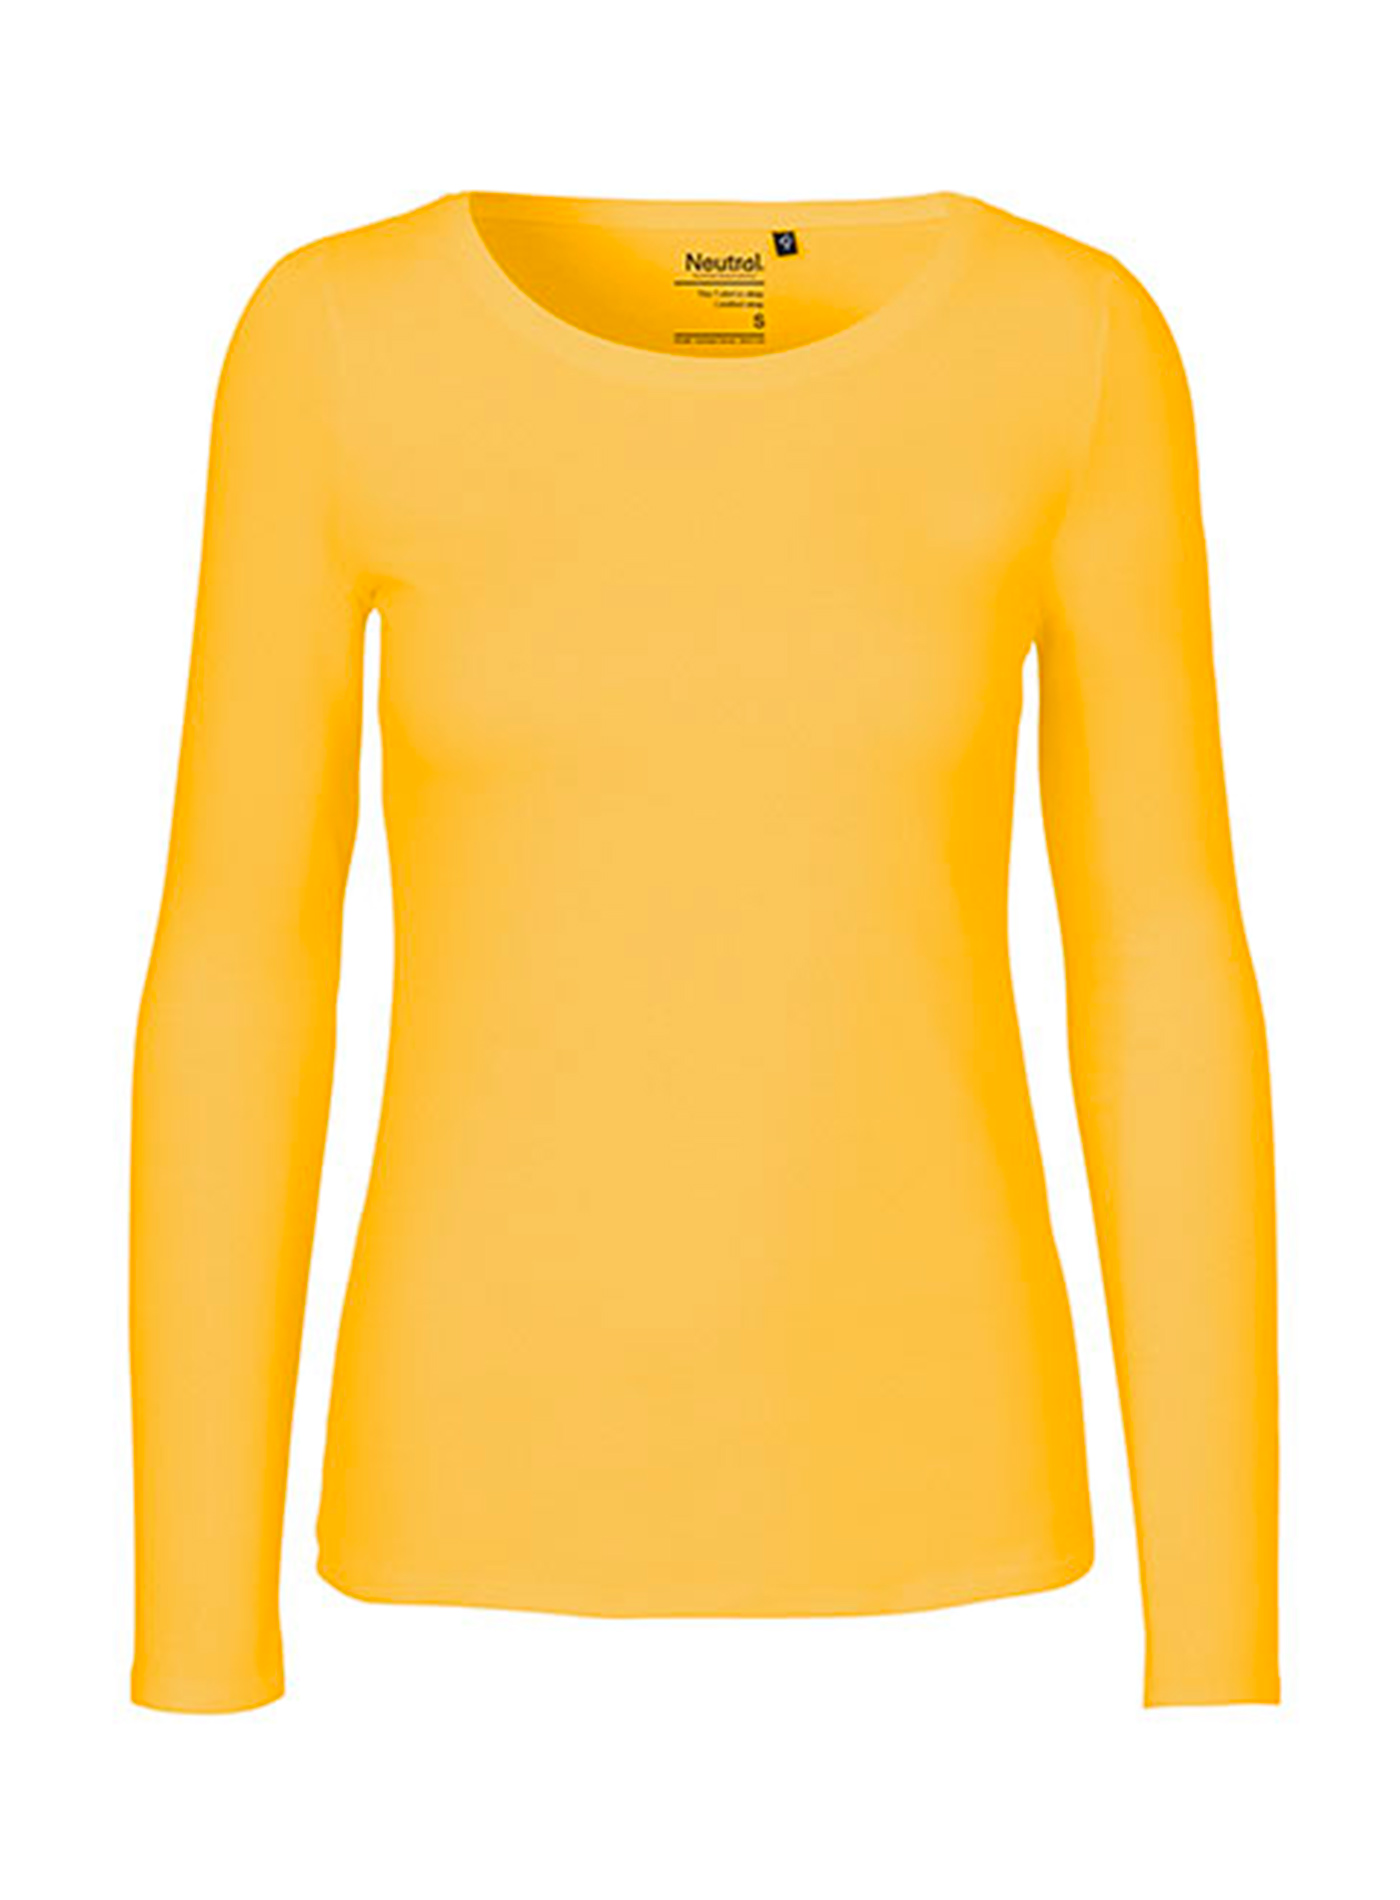 Dámské tričko s dlouhým rukávem Neutral - Žlutá XL